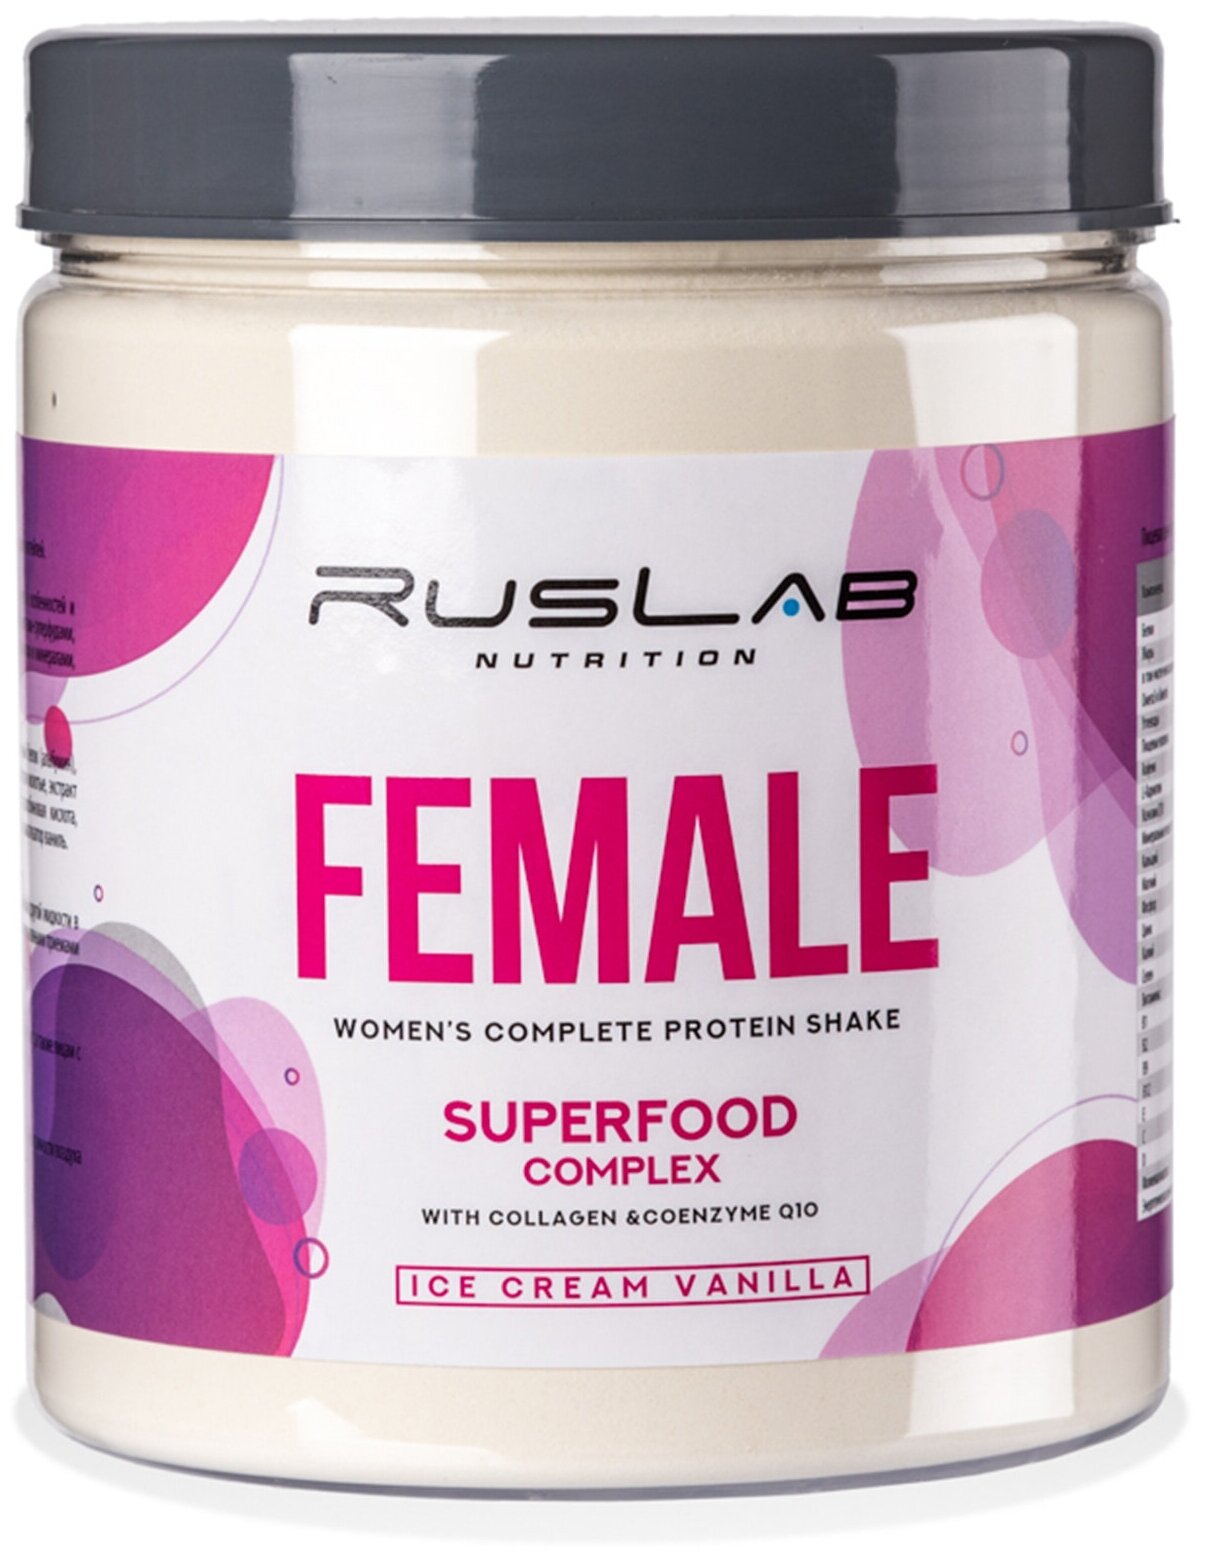 FEMALE-протеин для похудения,белковый коктейль для девушек (700 гр),вкус ванильное мороженое